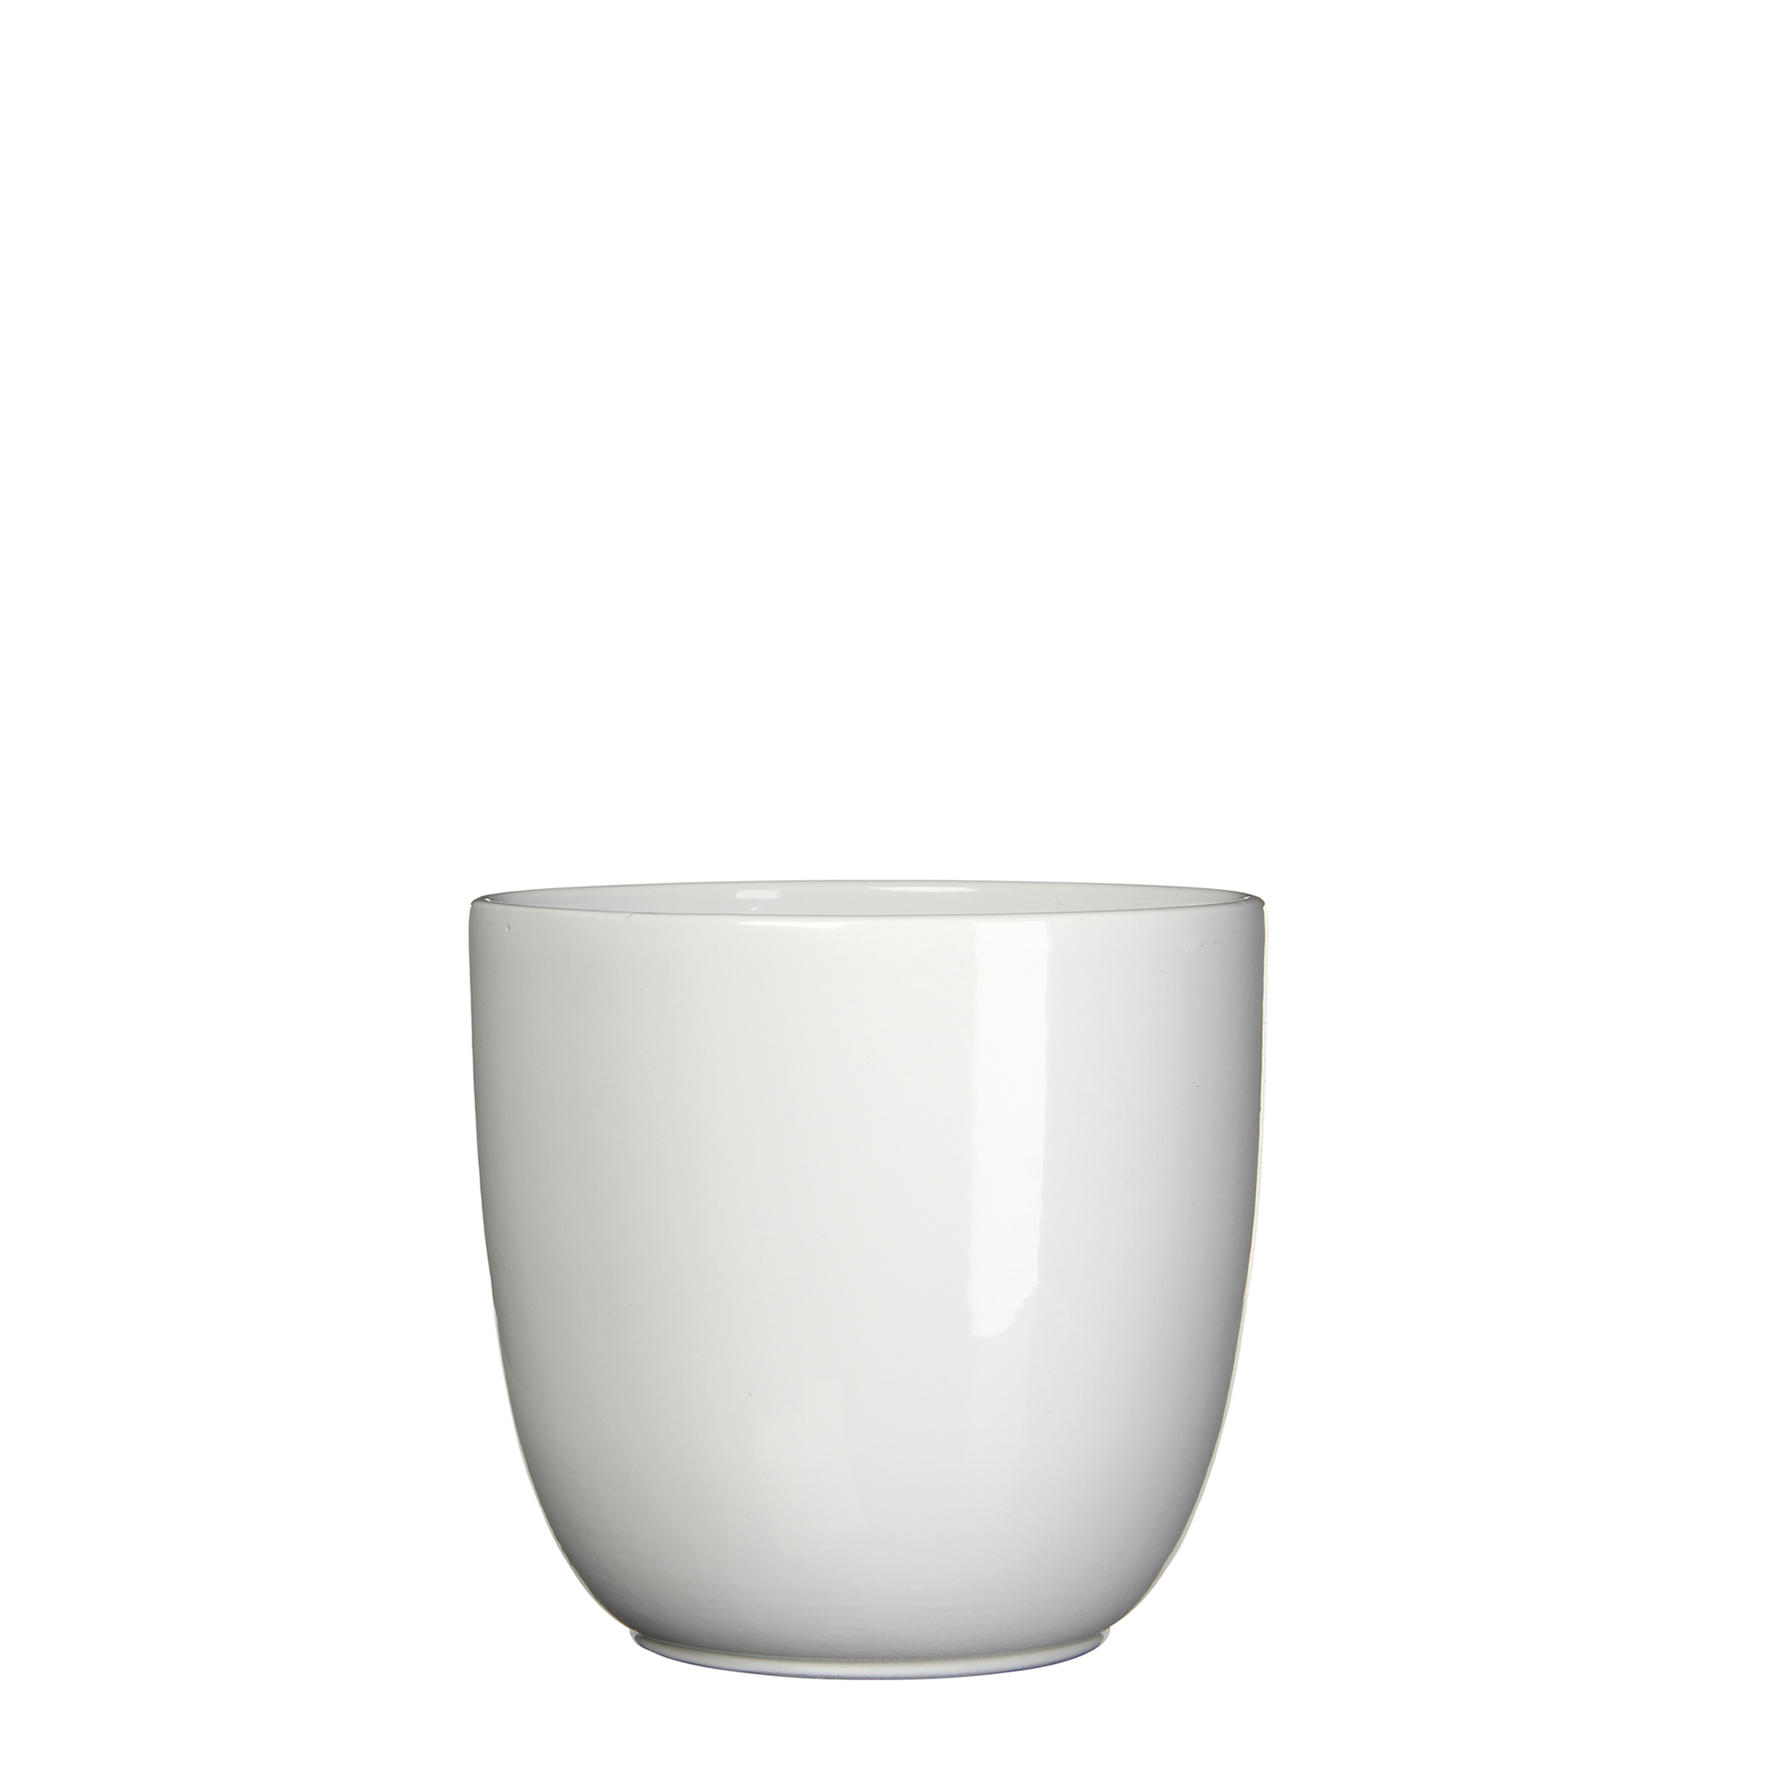 TEGLA ZA BILJKE  keramika  - bijela, Basics, keramika (17/16cm)